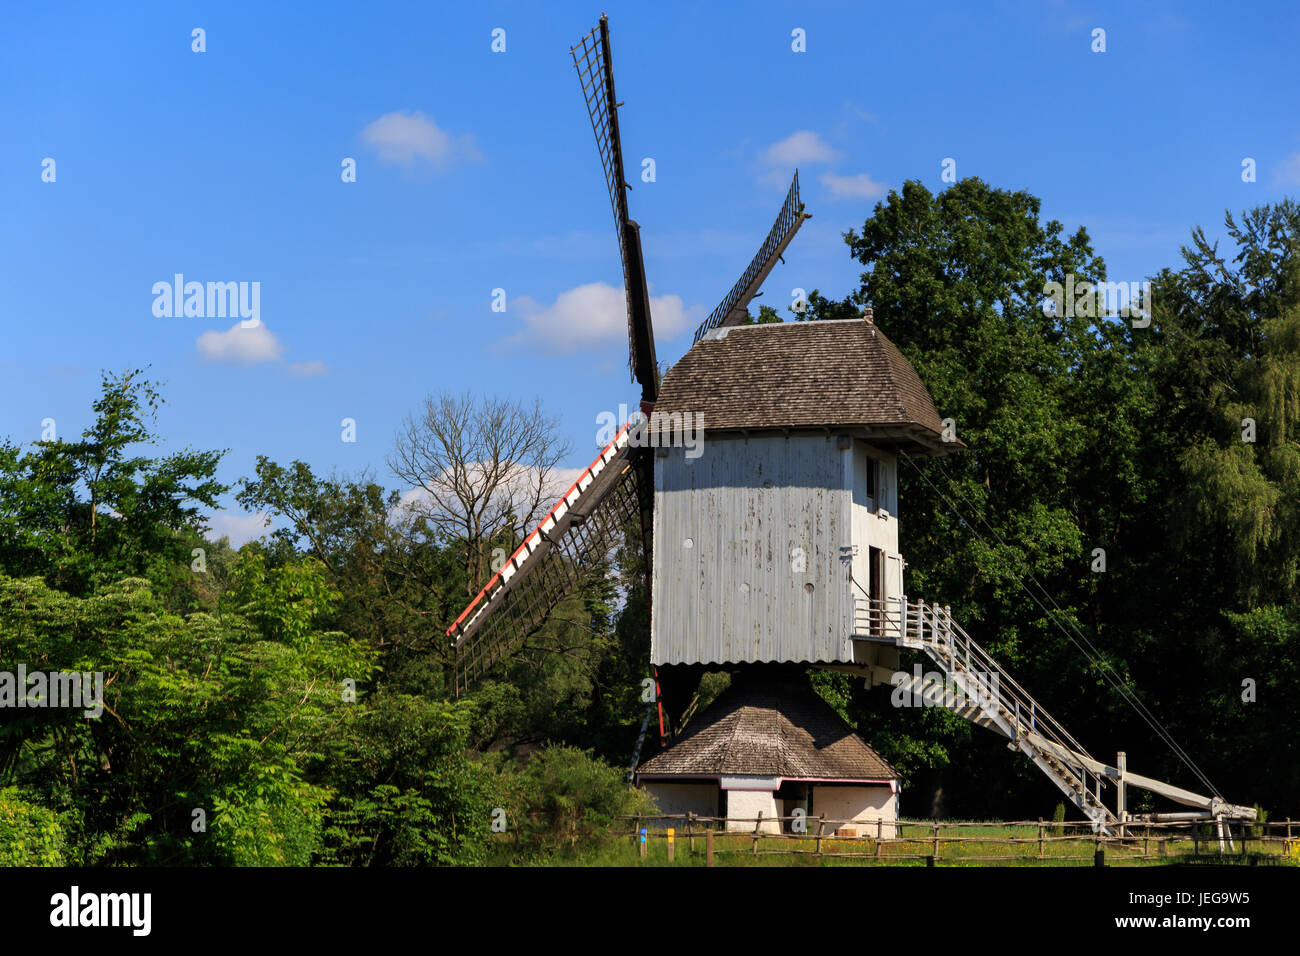 Ancien moulin à vent sur une journée ensoleillée, musée historique Bokrijk, Genk, Flandre orientale, Belgique Banque D'Images